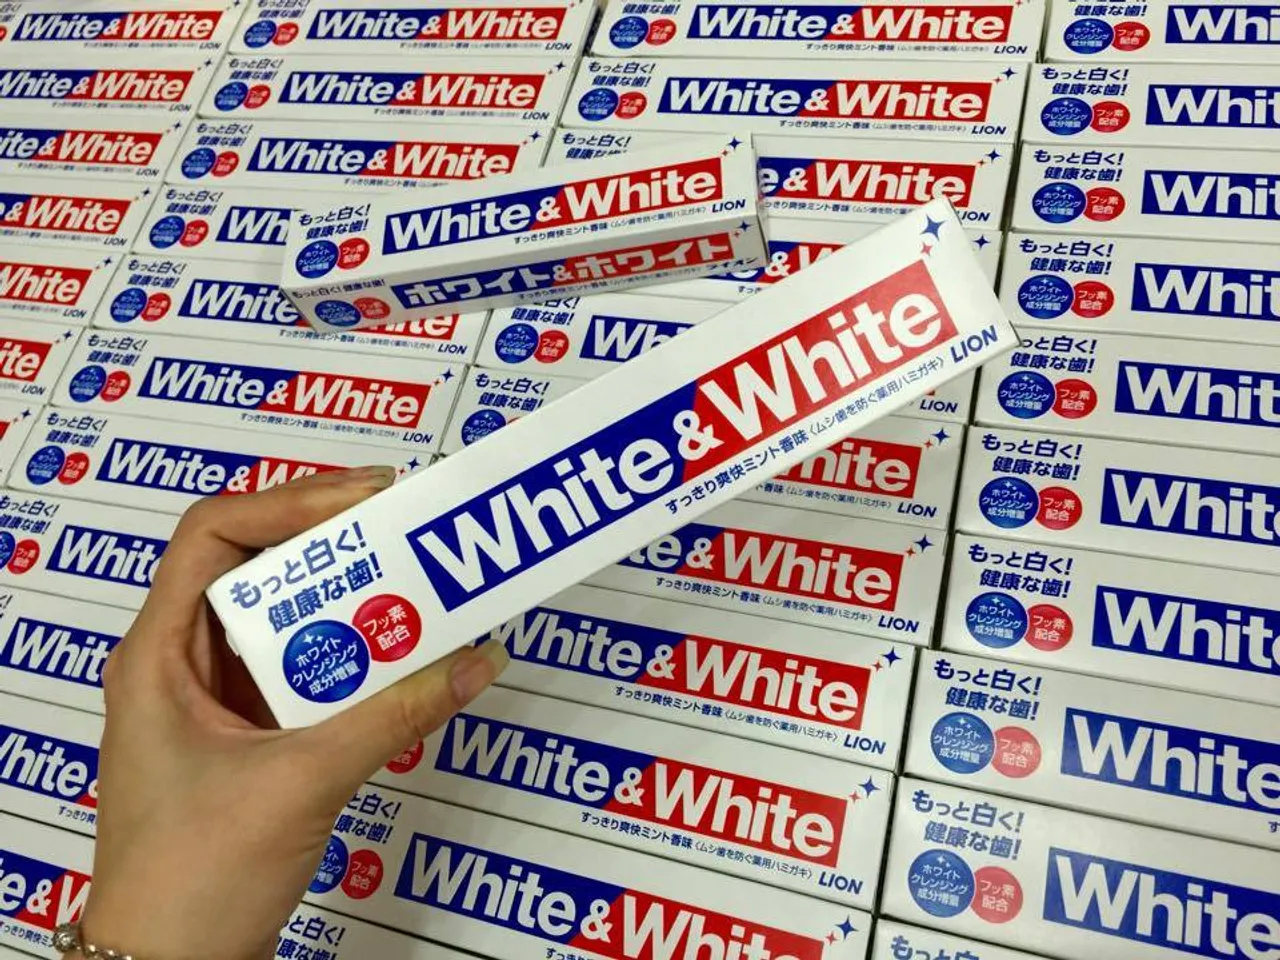 Kem đánh răng White & White Lion rất phổ biến tại Nhật Bản